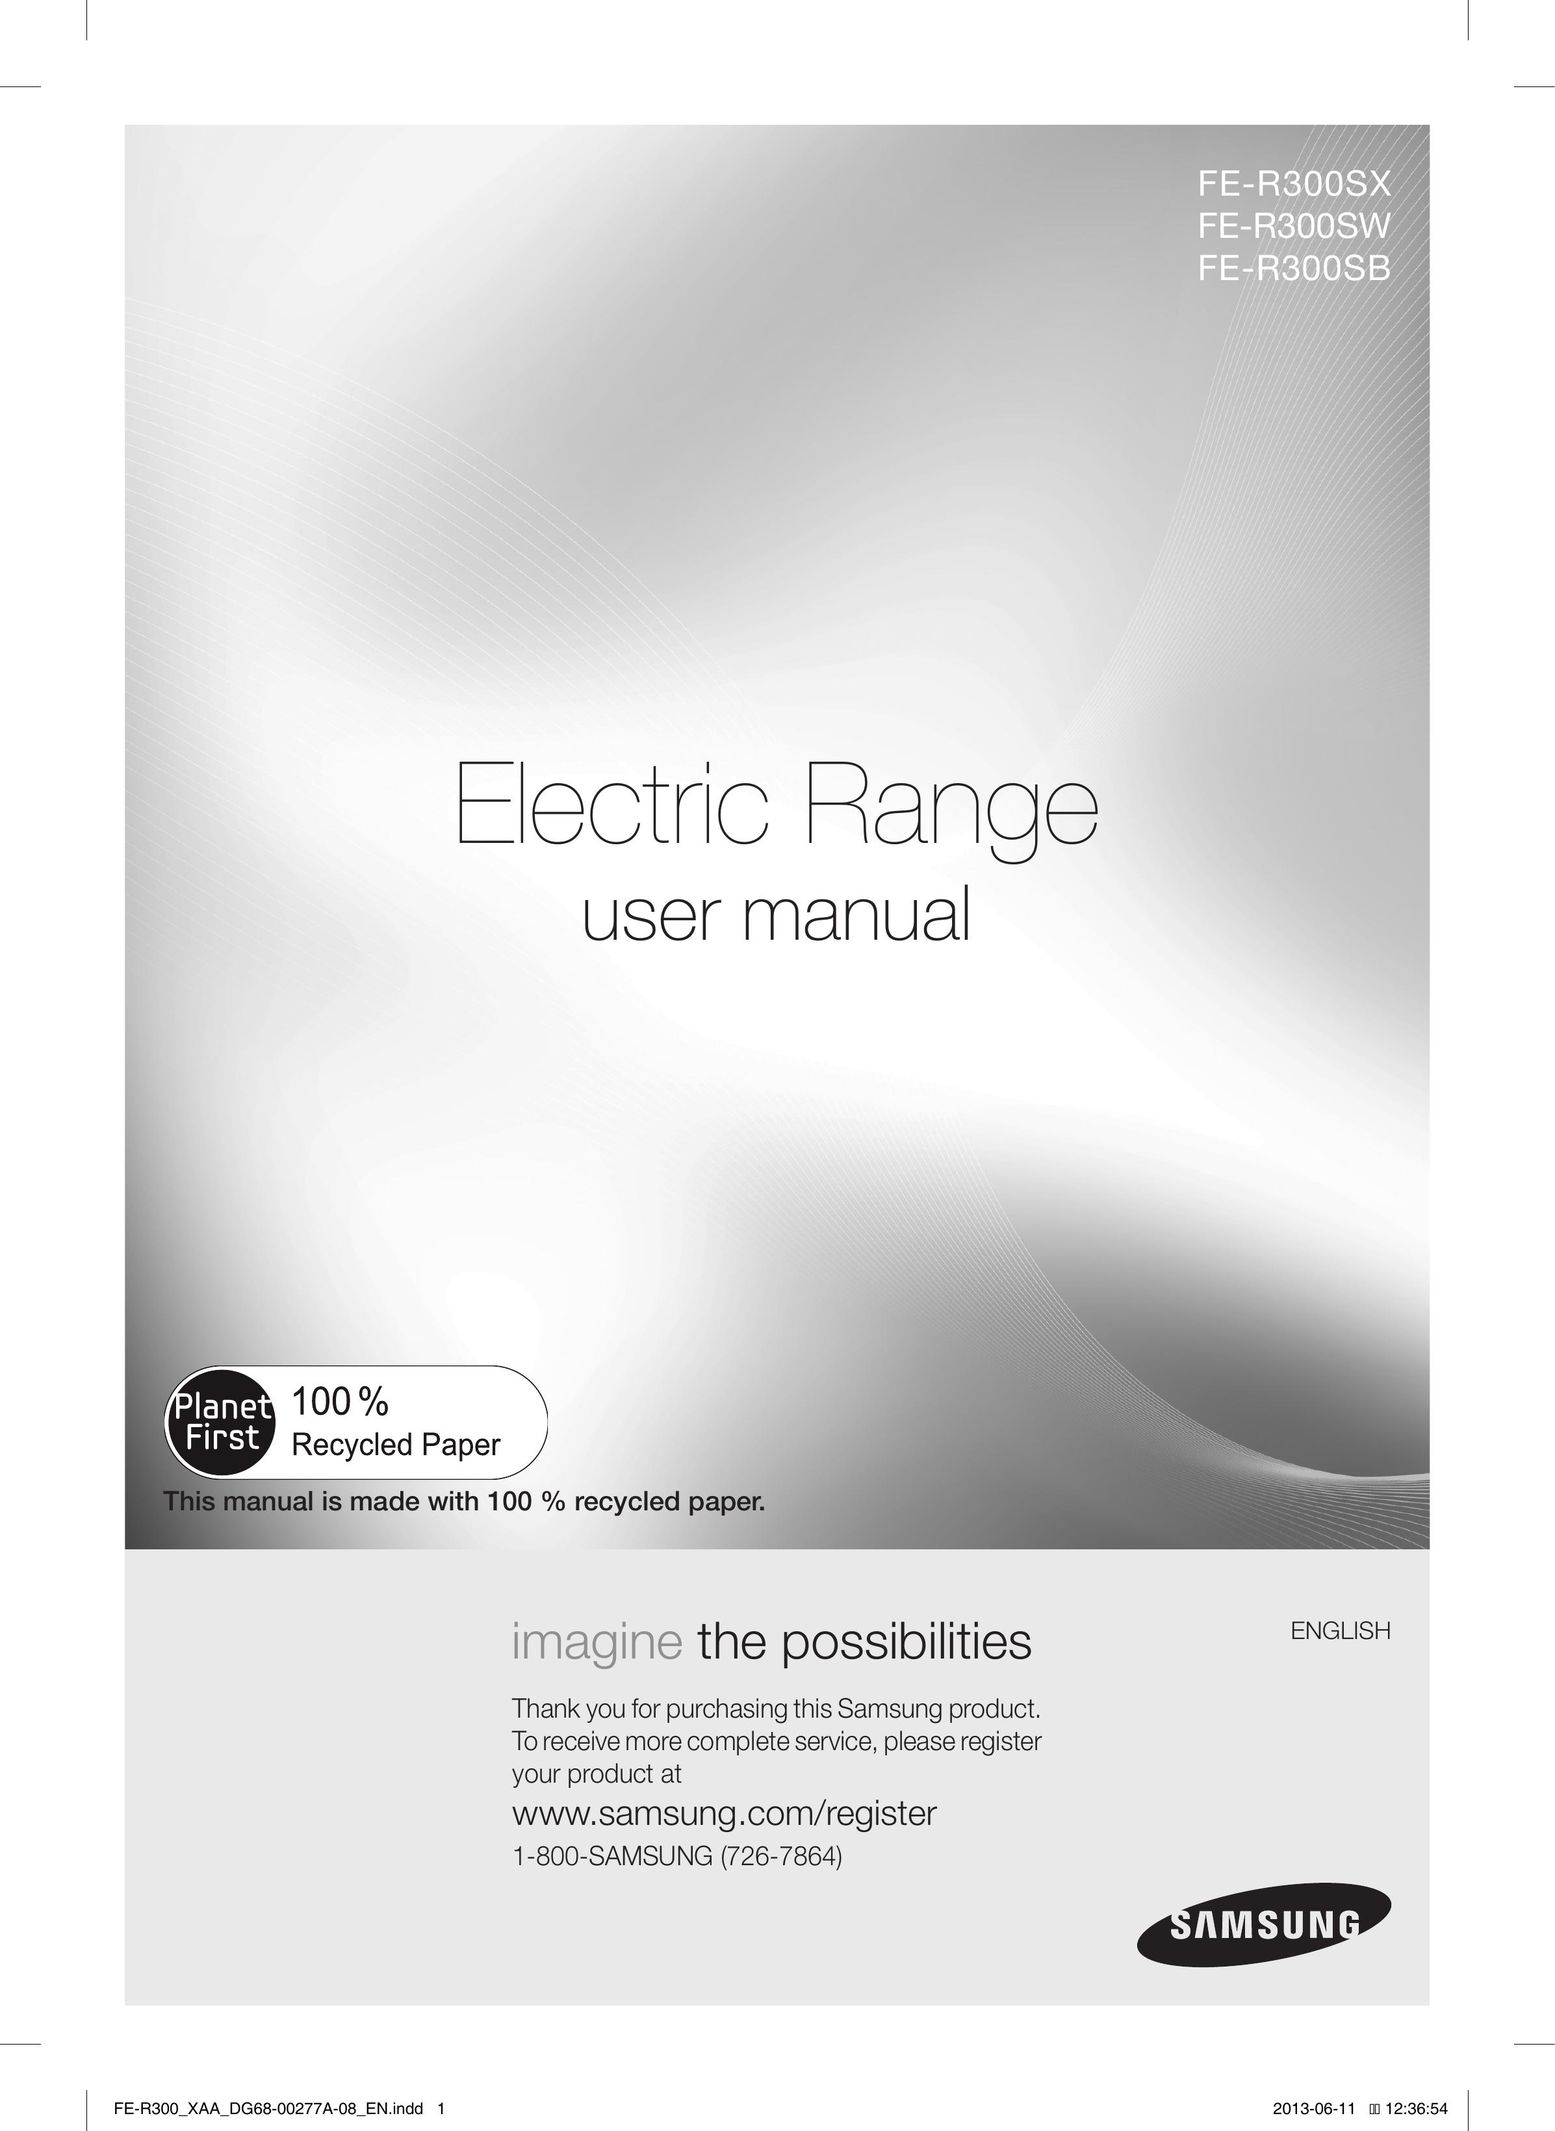 Samsung FER300SX Range User Manual